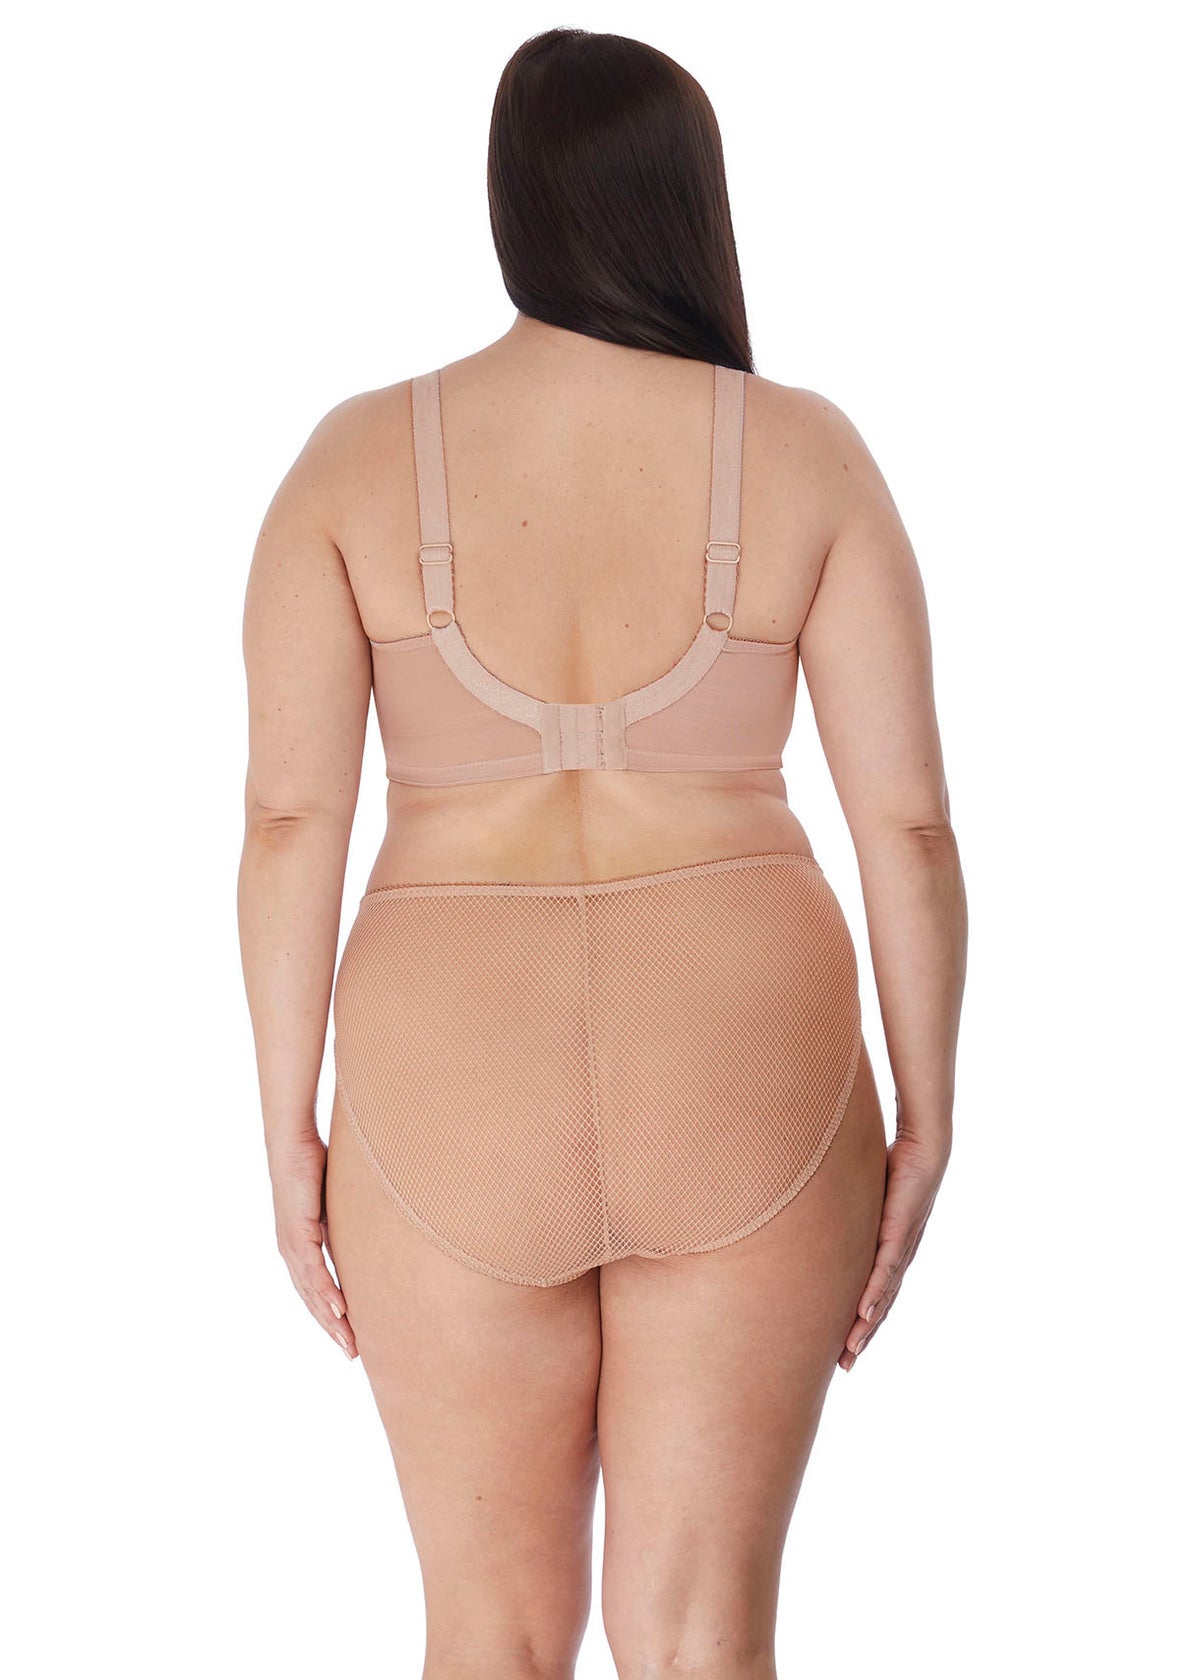 women's plus size lingerie